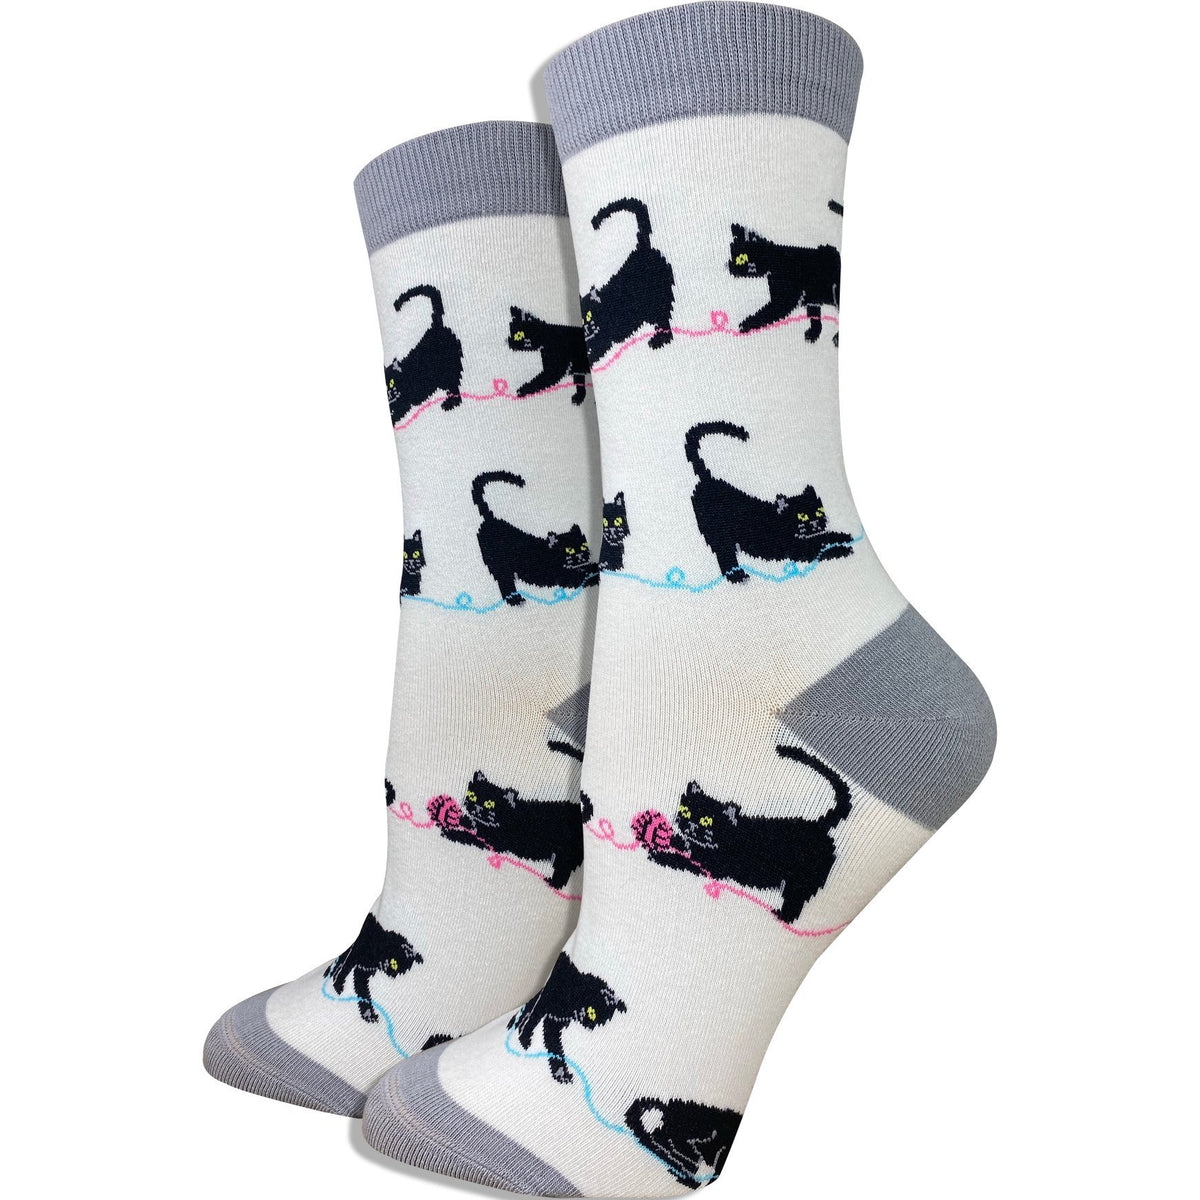 Women's Polar Bear Socks - Imagery Socks